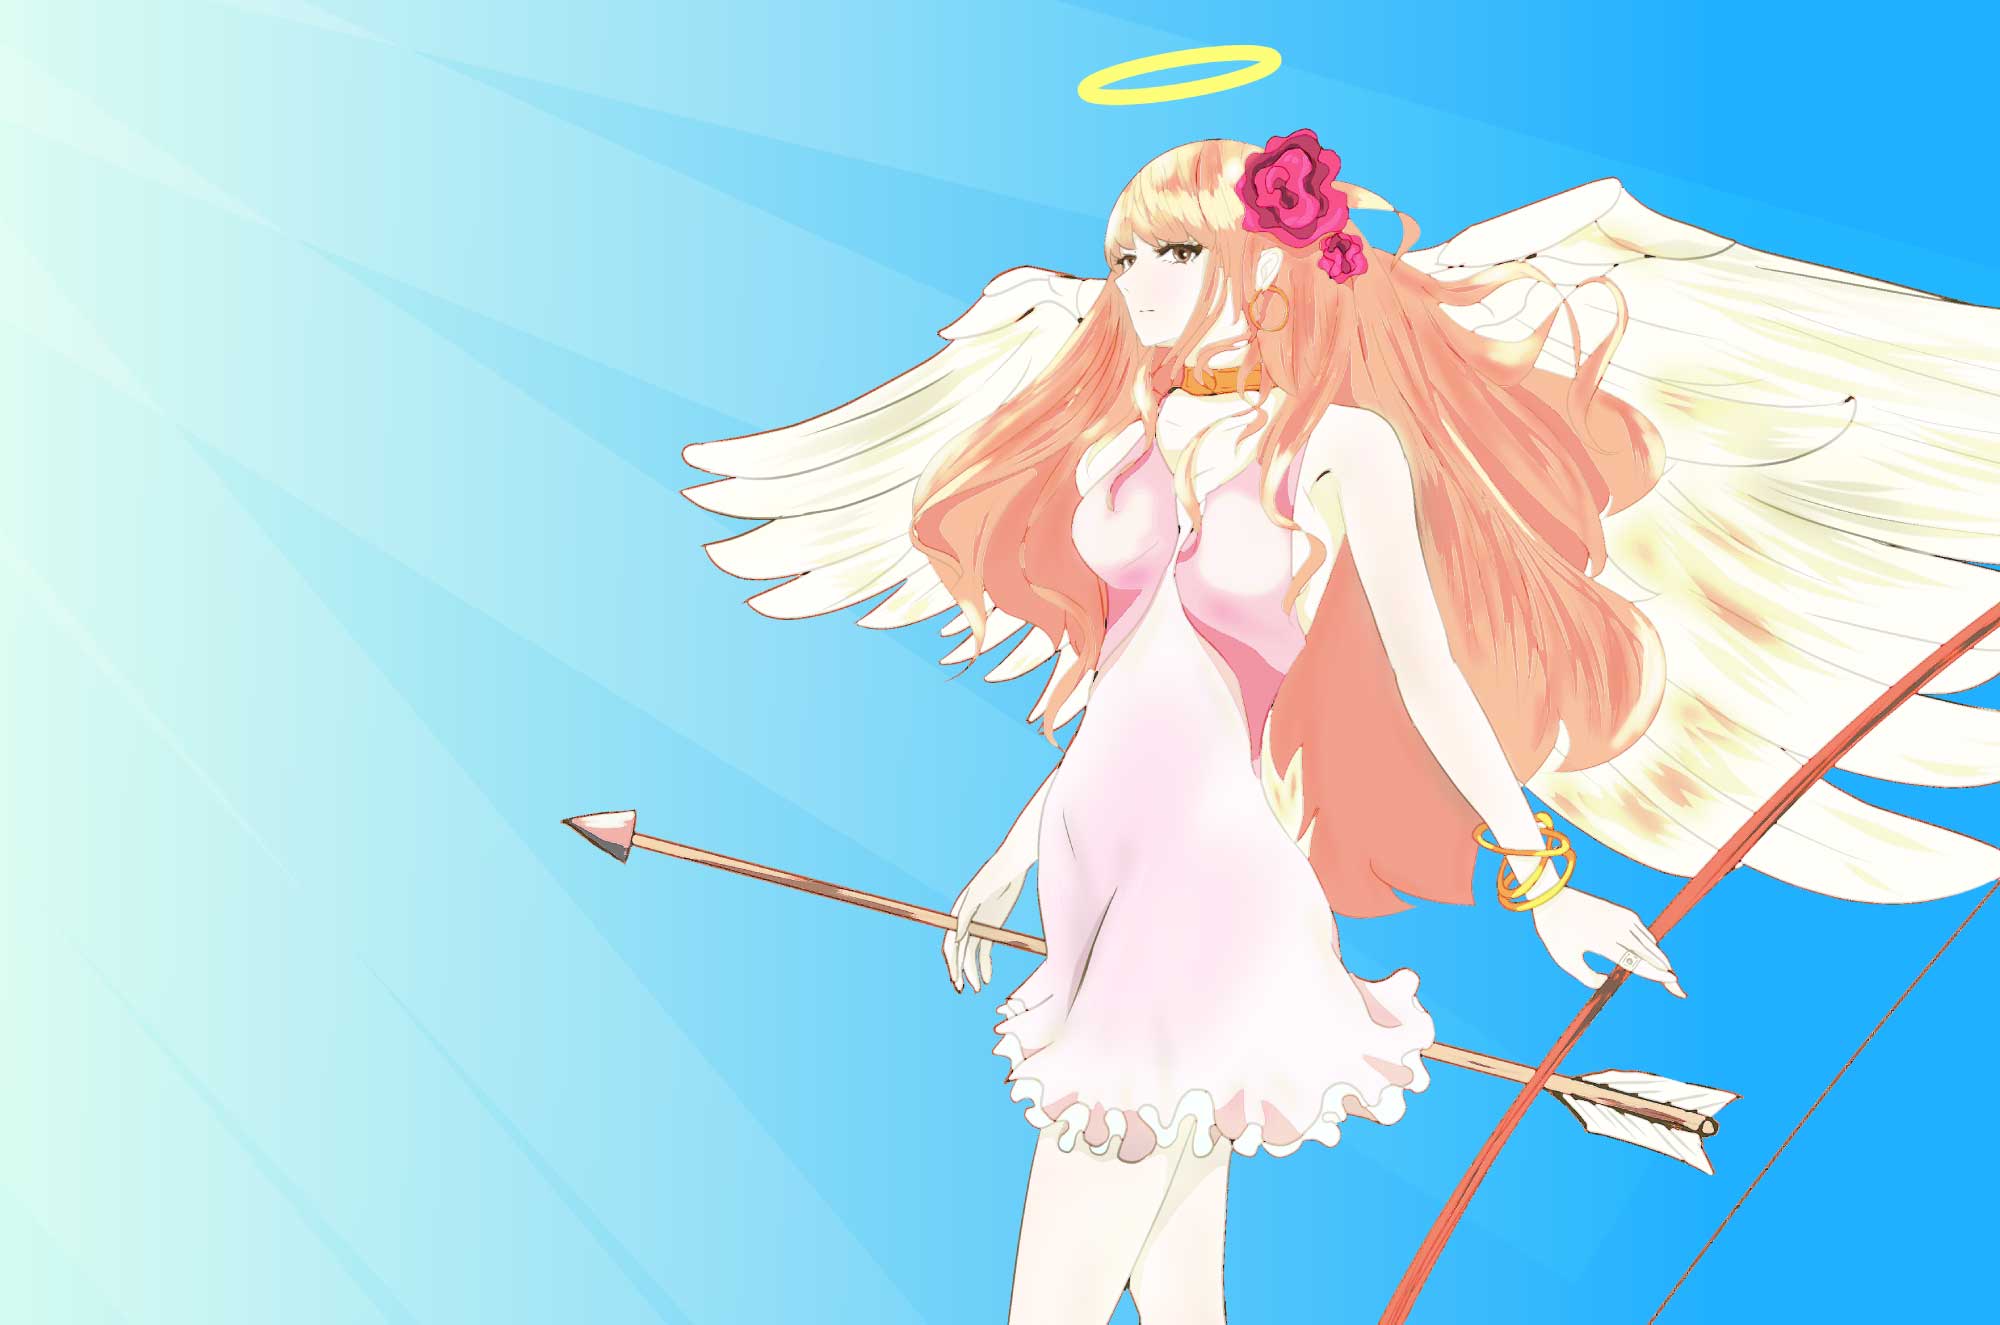 天使のイラスト - 可愛い想像のキャラクター素材